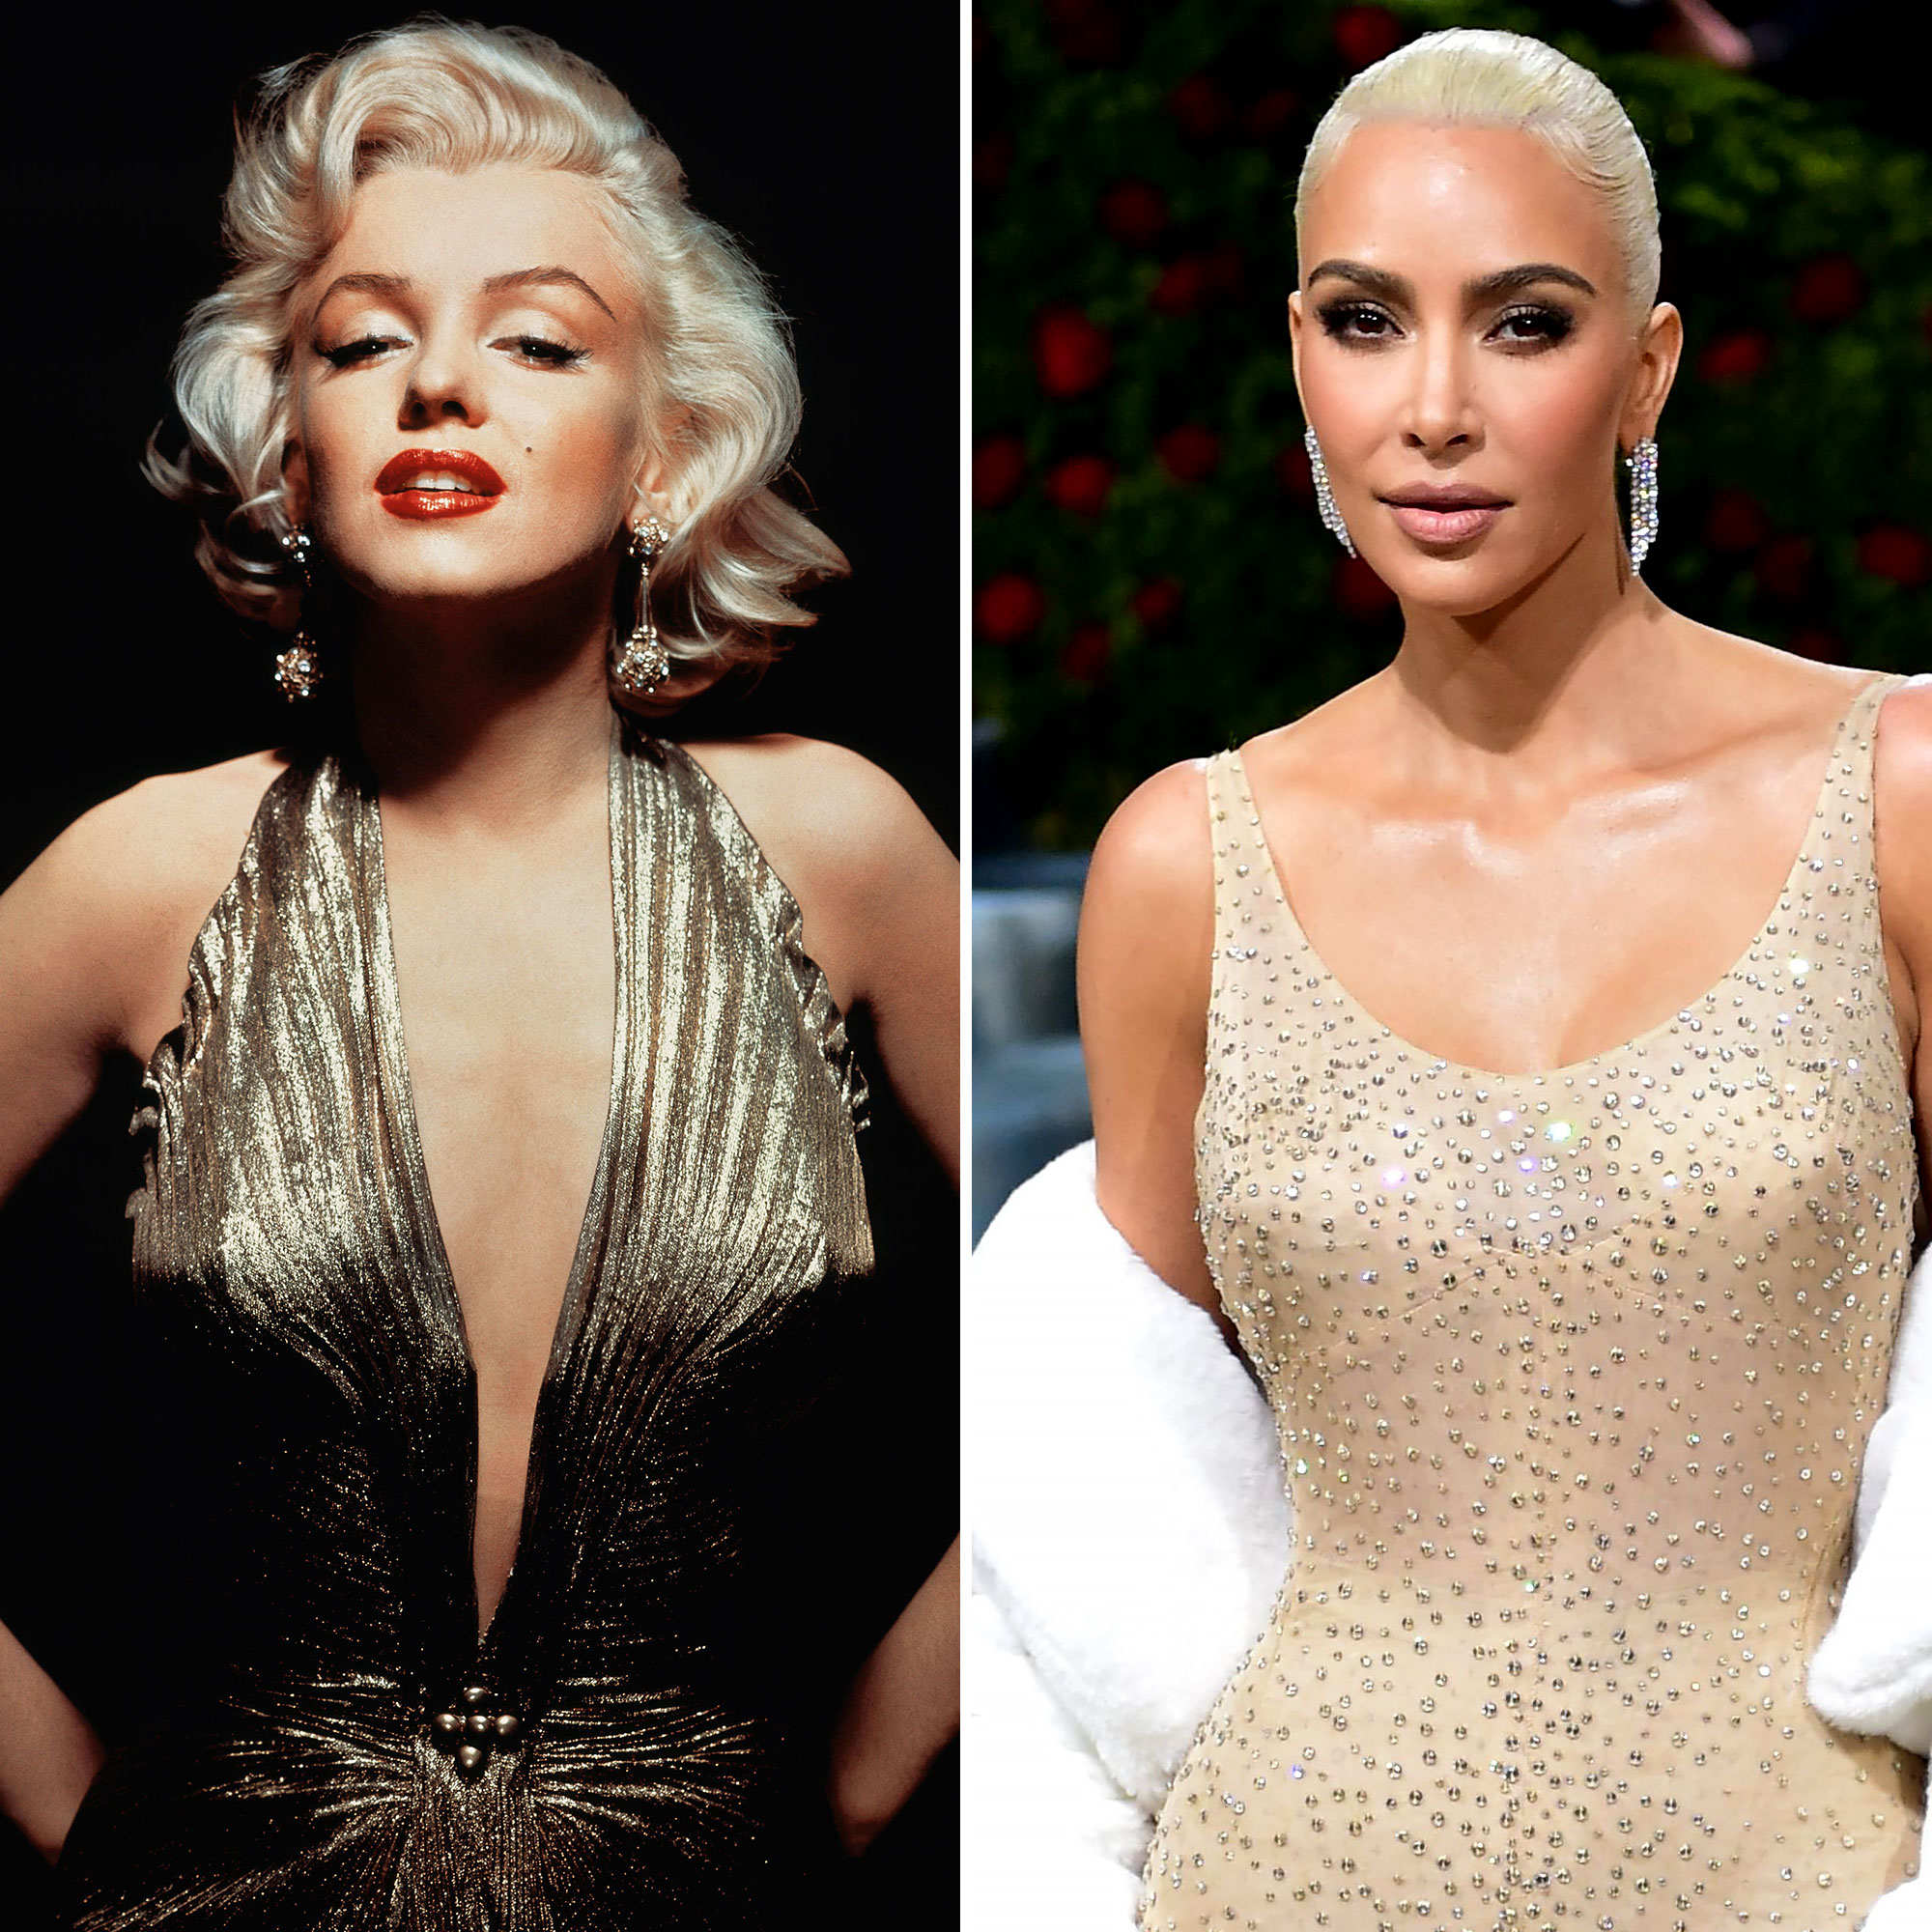 Marilyn Monroe (R) & Kim Kardashian (SN?) wearing the same dress : r/Kibbe